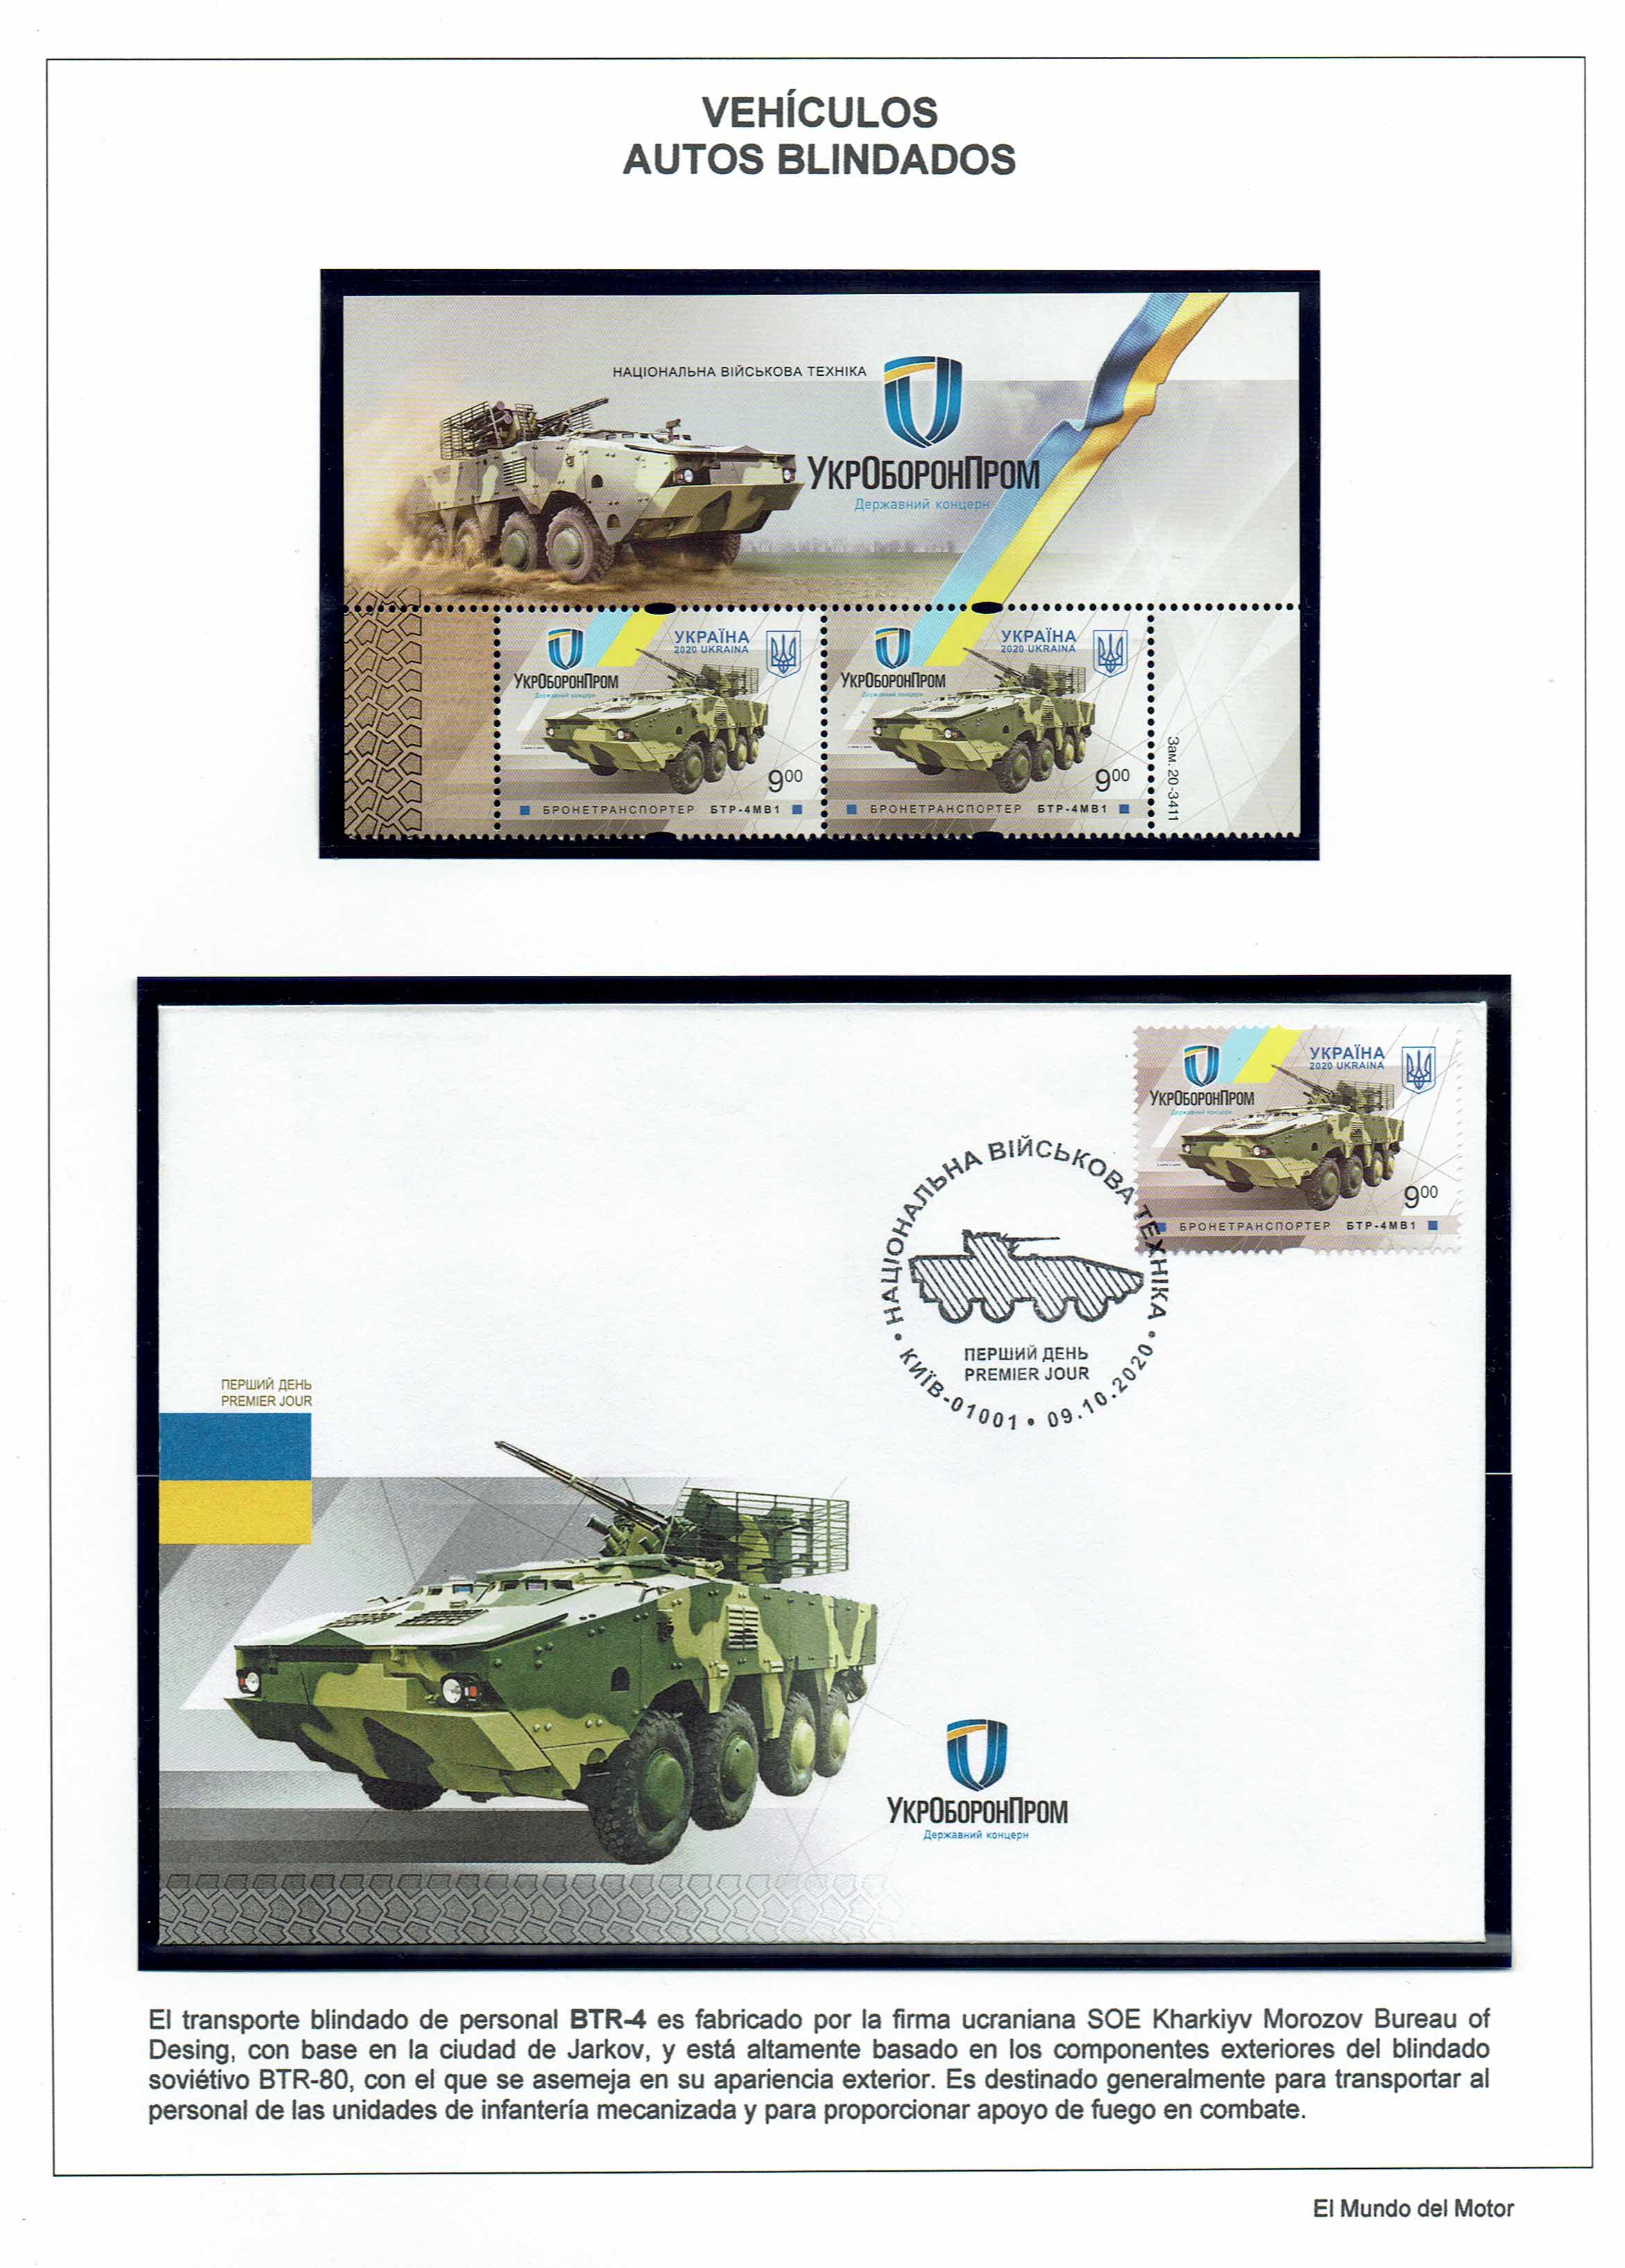 BTR-4 Ucrania